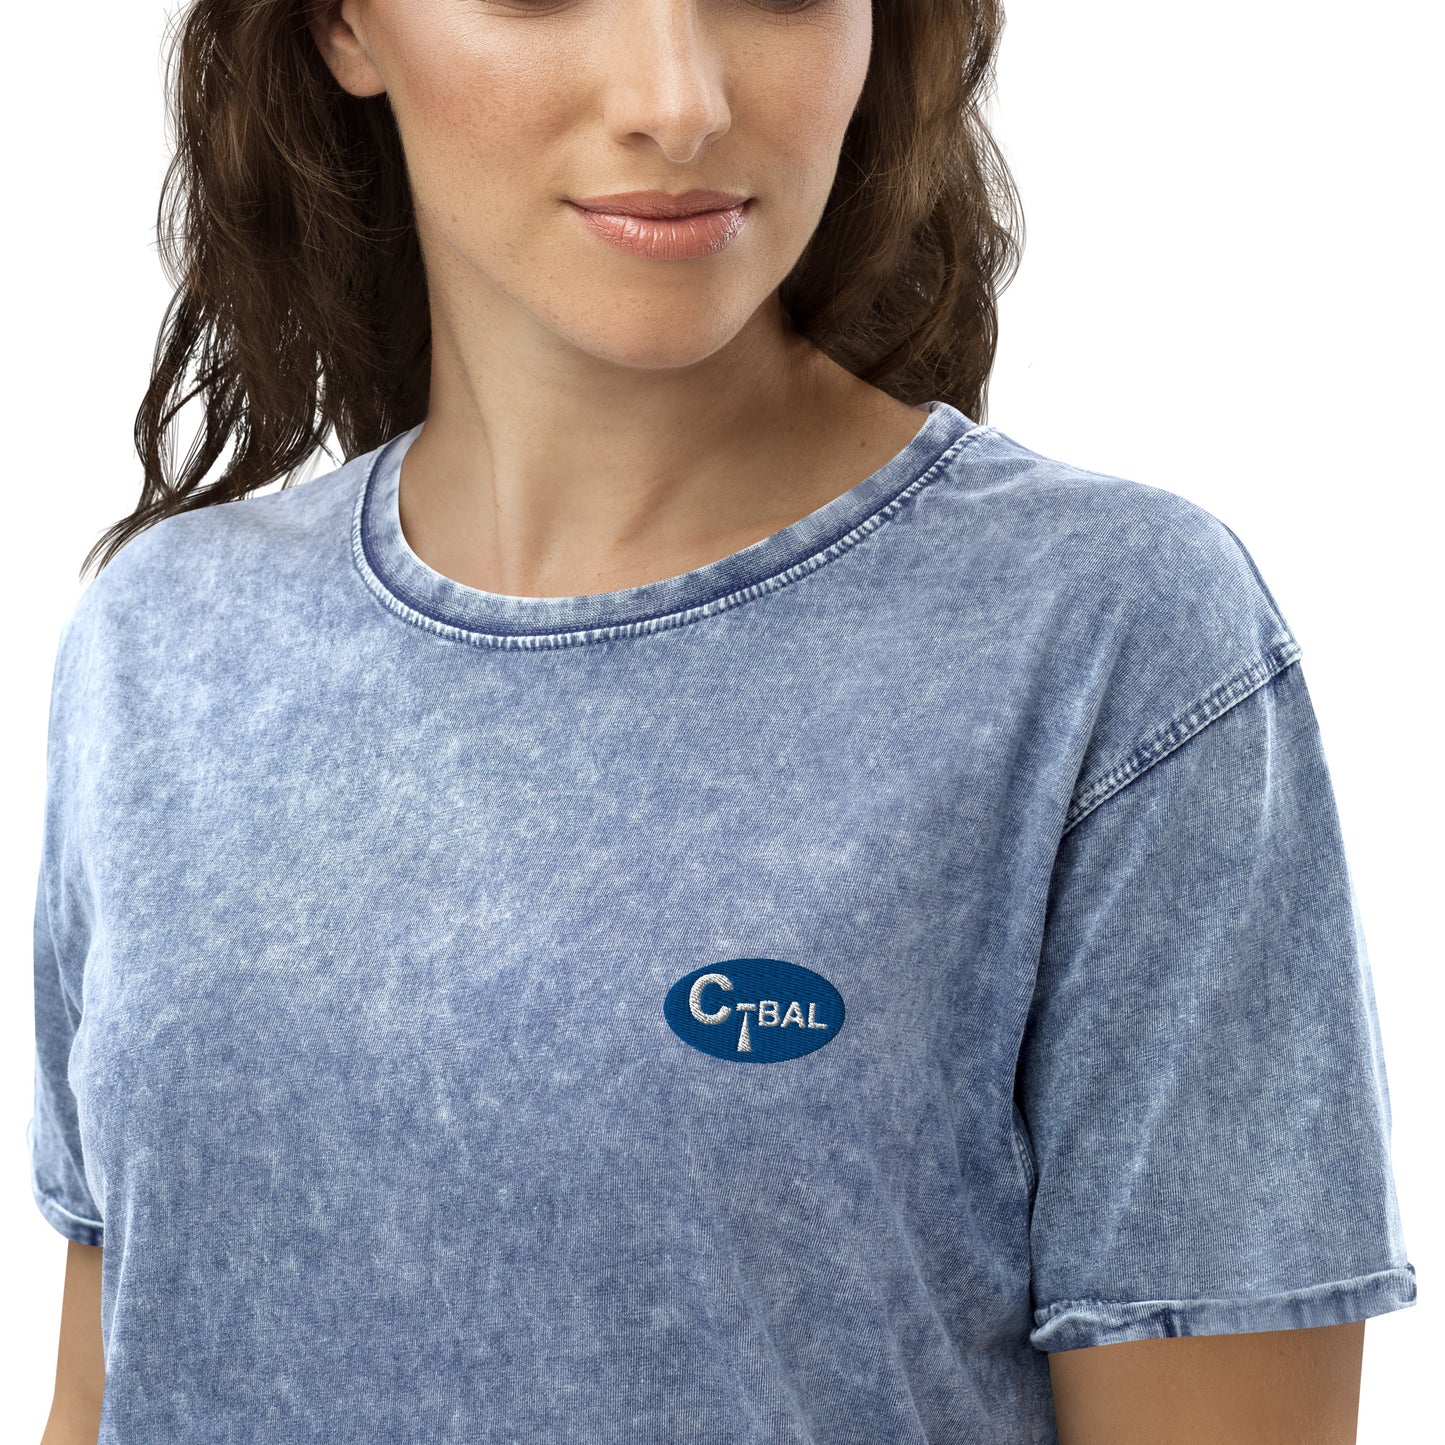 B001 - デニムTシャツ (C-BAL：ブルー/刺繍ロゴ)